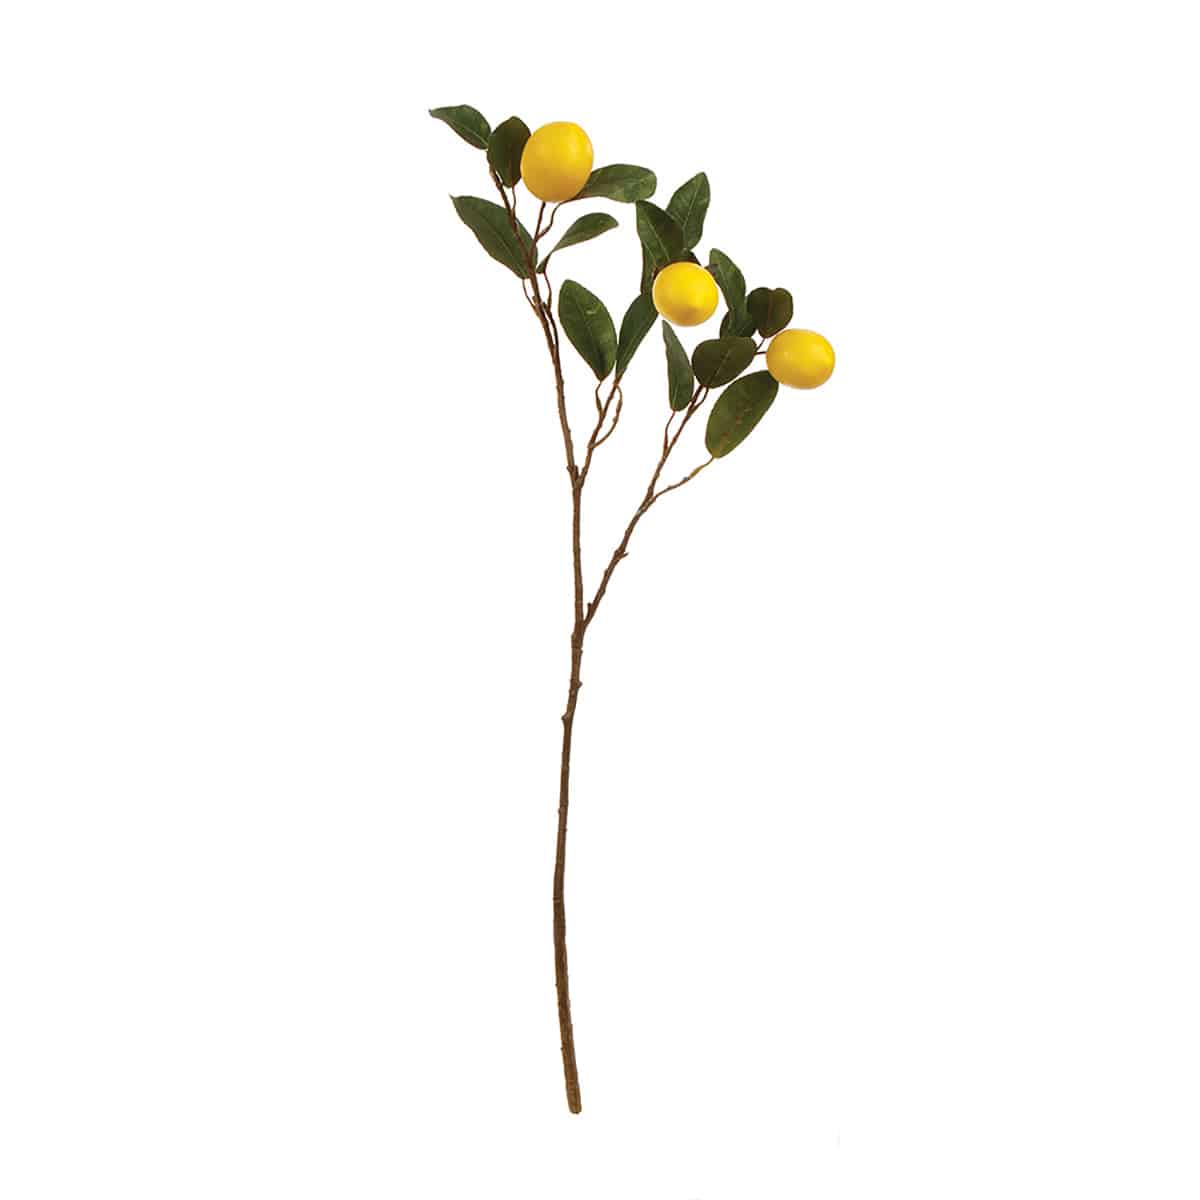 Lemon Branch 29.5 - The Preppy Bunny